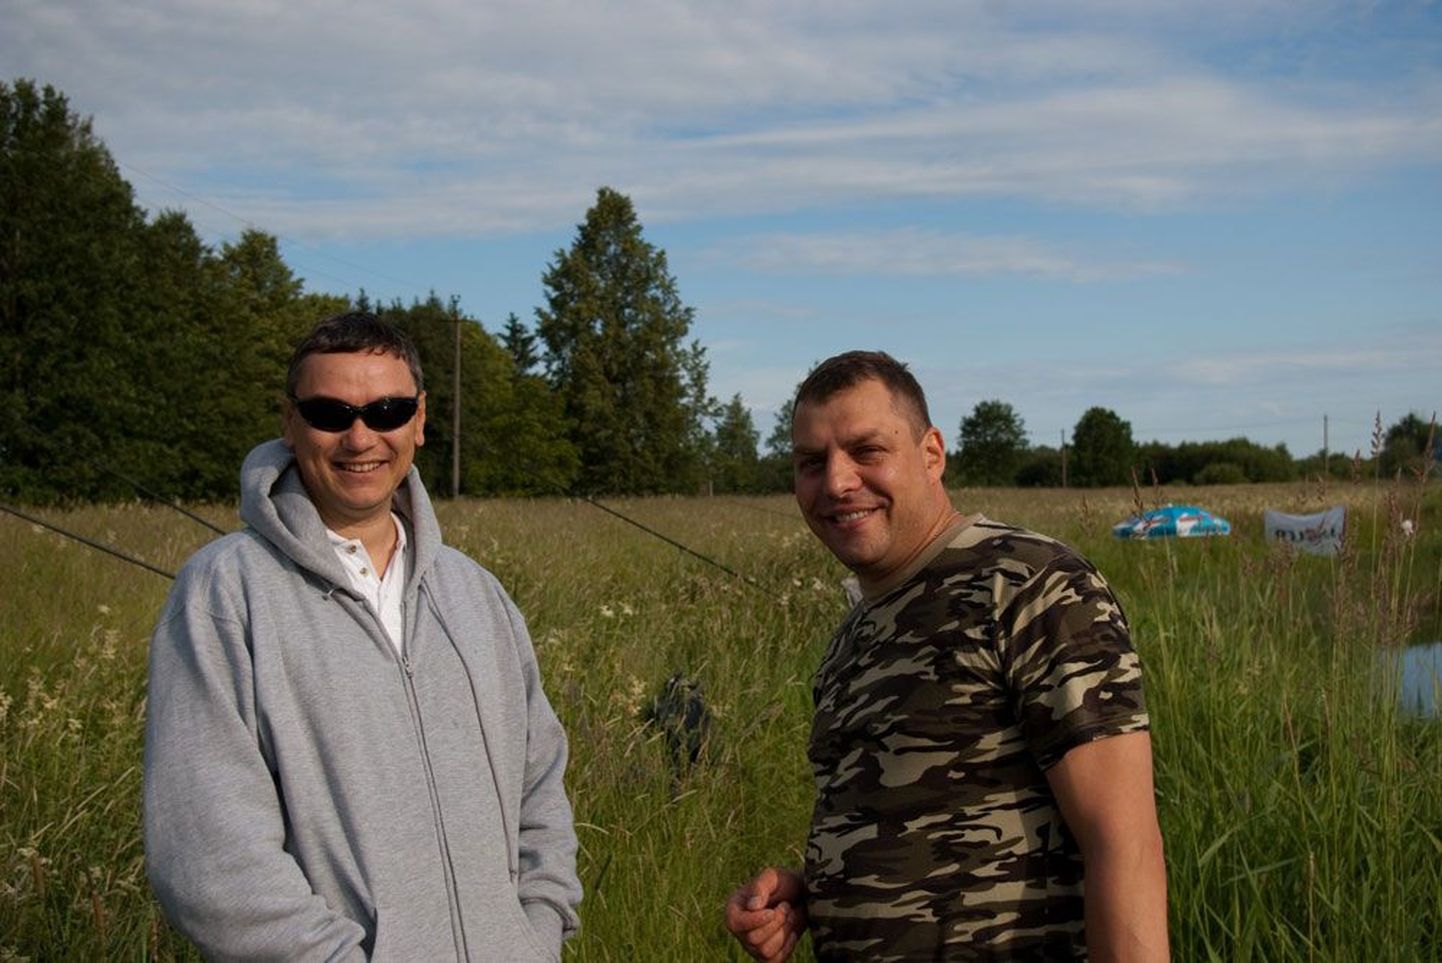 Герман Саяпин (справа) и Олег Суханов — друзья по клубу Angler и соперники в соревнованиях на реке Пярну.